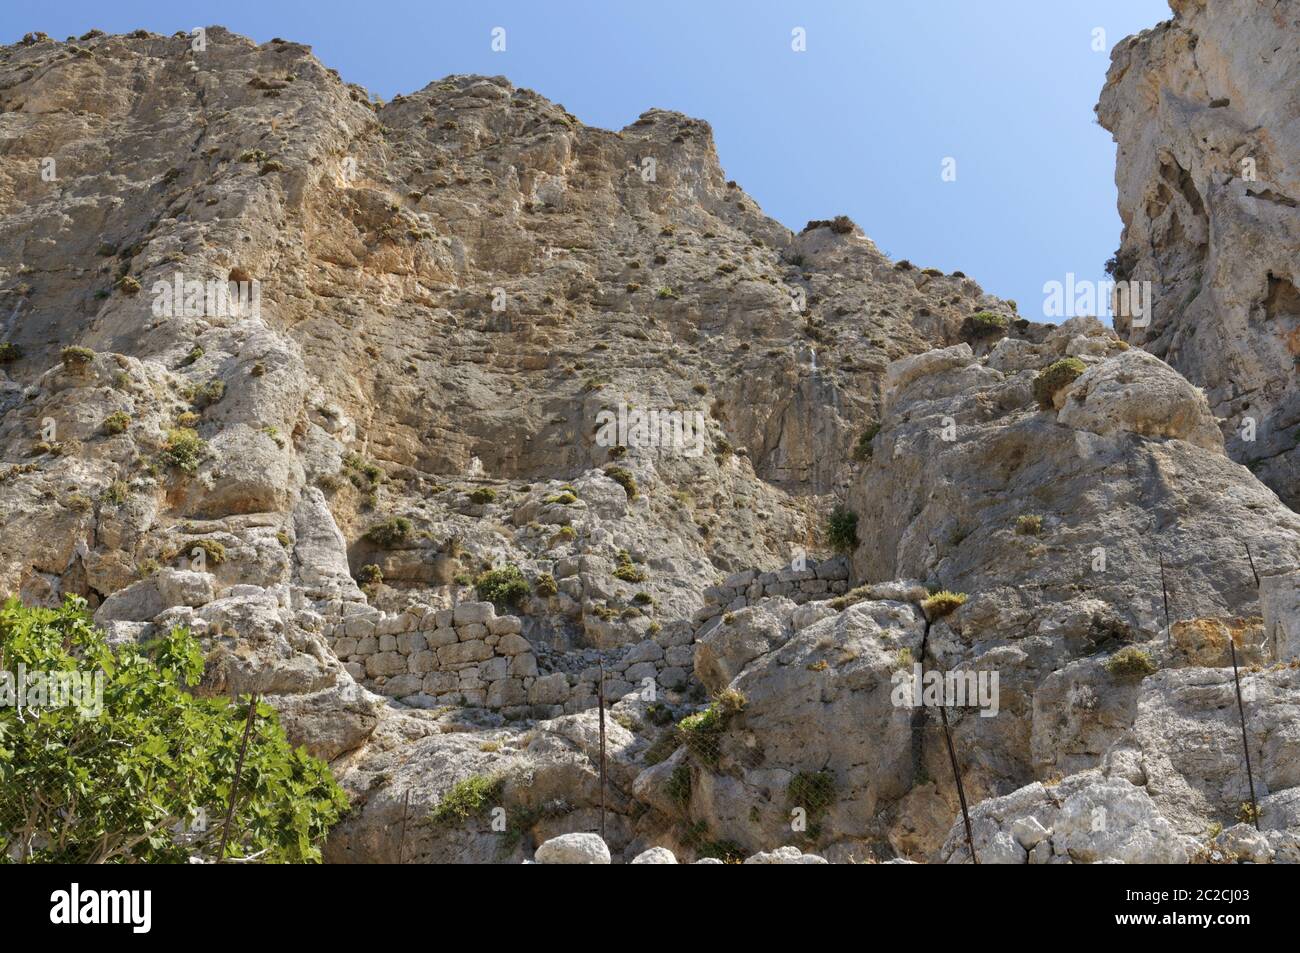 Resti del IV secolo A.C. kastri o piccolo castello, sulle colline sopra il villaggio di Emborios, Kalymnos, isole Dodecanesi, Grecia. Foto Stock